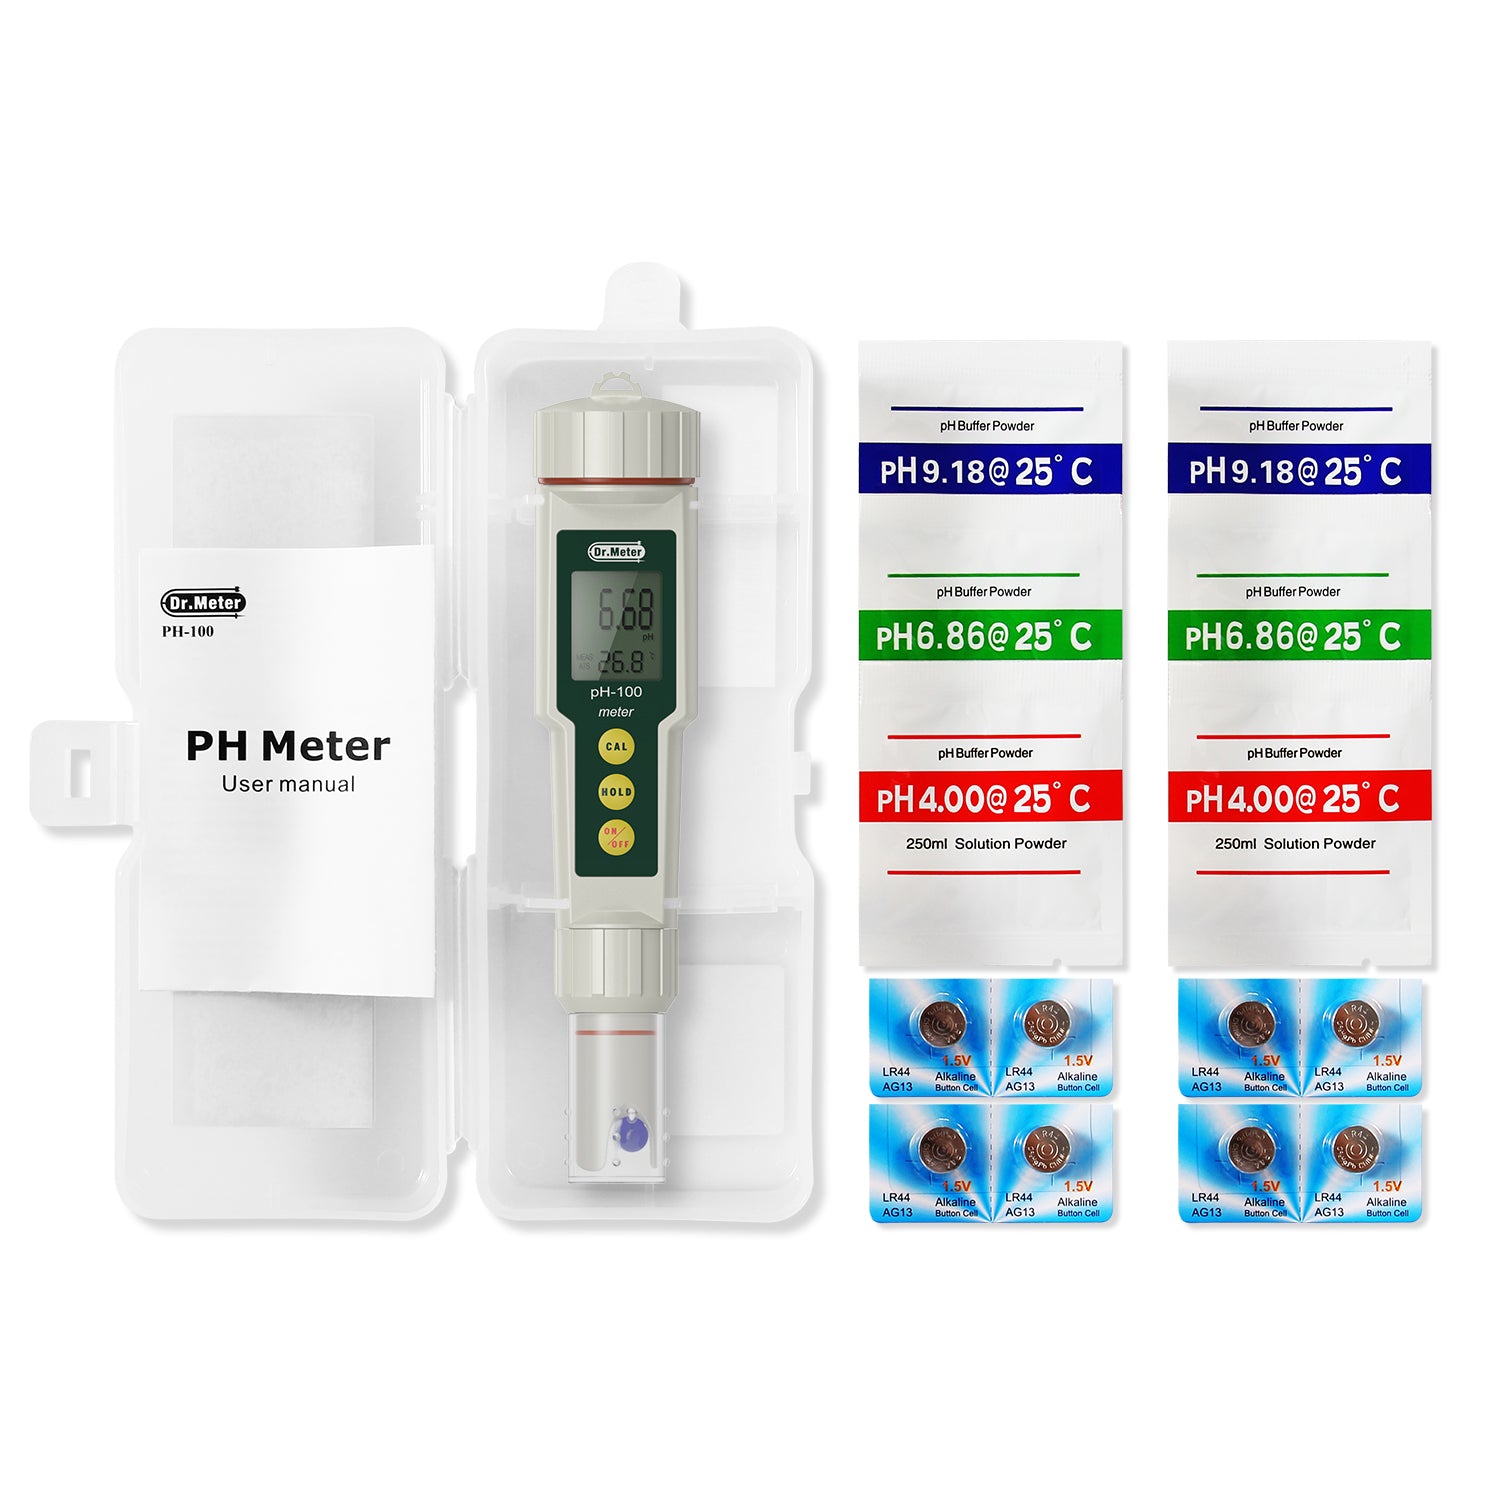 PH mètre,Dr.meter Mesureur de pH 0.01 Haute résolution et Haute précision  avec écran LCD rétro-éclairé Bicolore, Portée de Mesure 0-14pH avec  Fonction